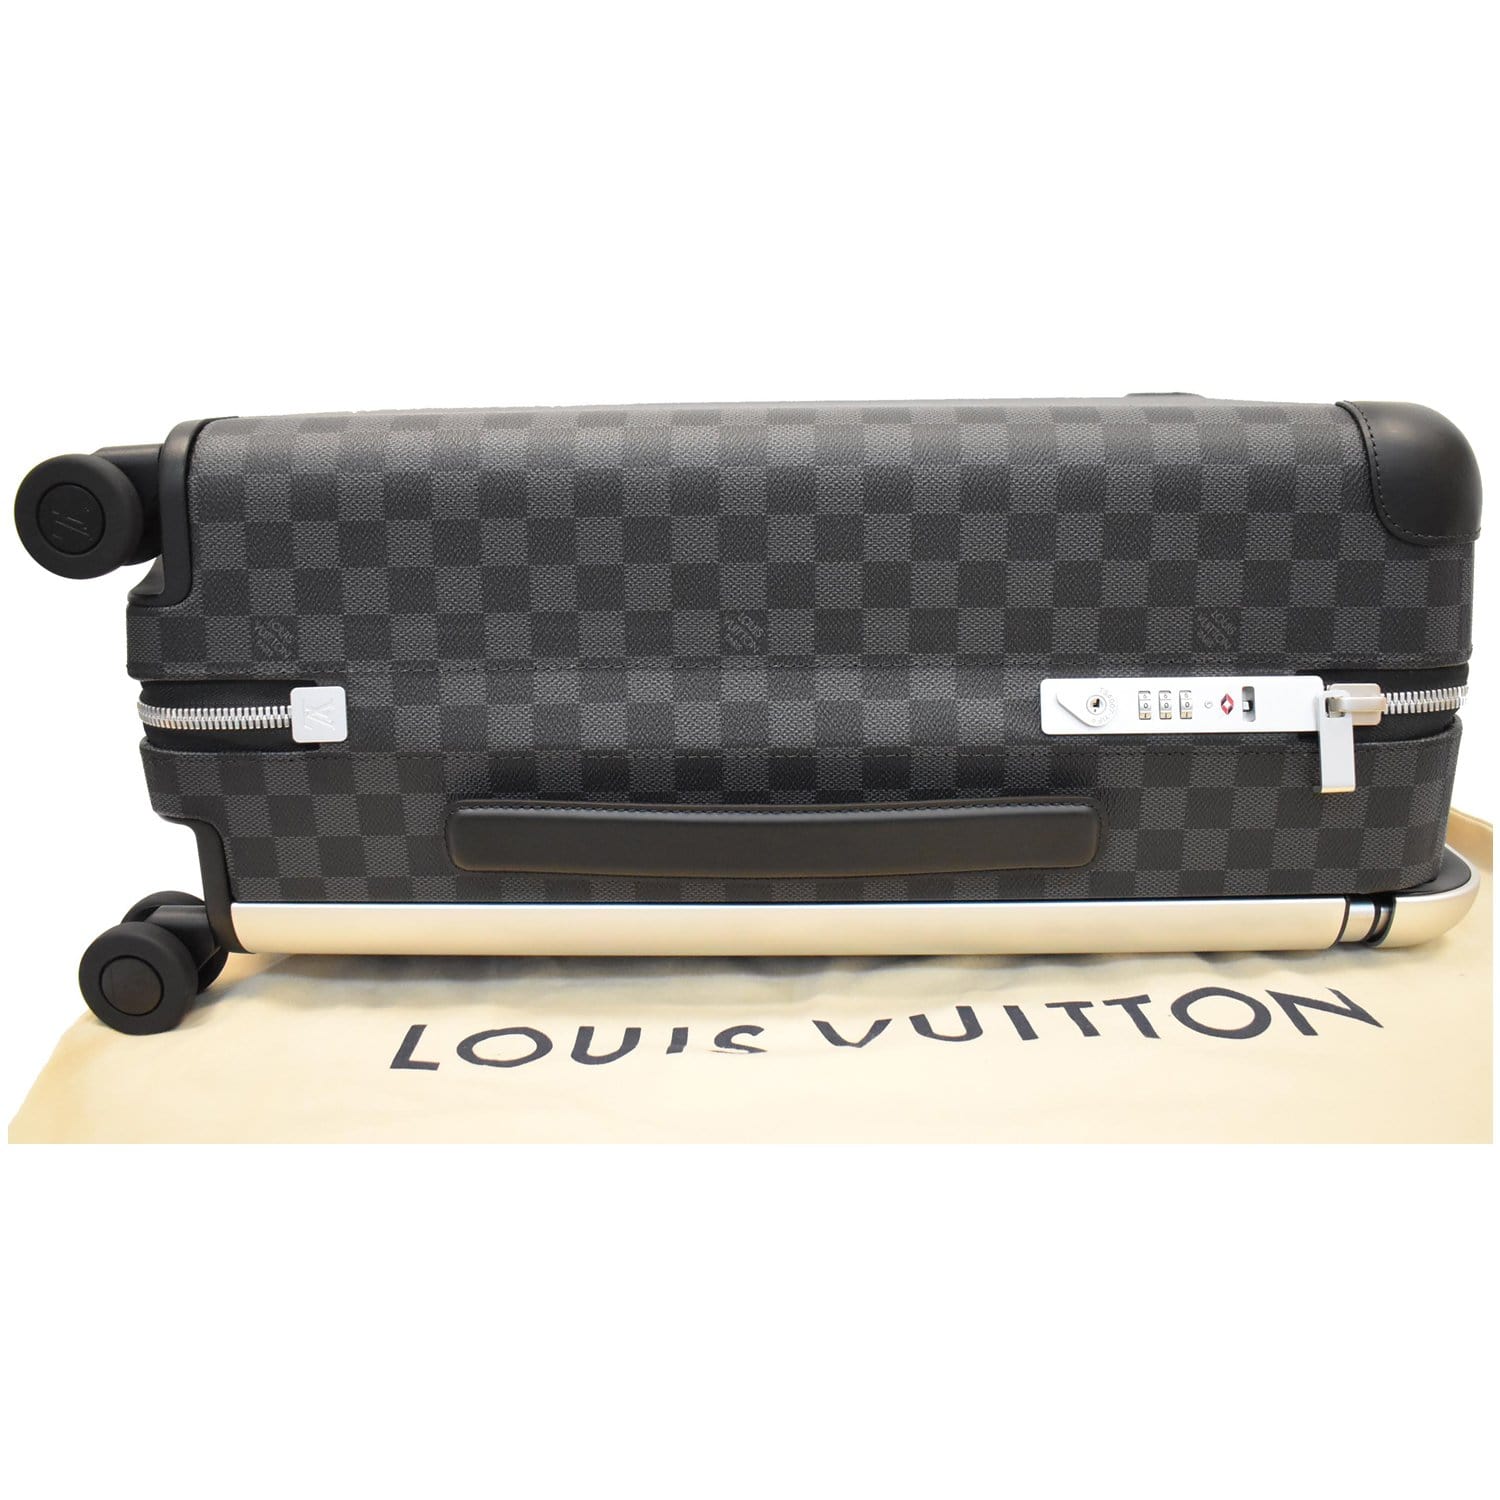 Louis Vuitton Horizon 55 Damier Graphite Rolling Suitcase